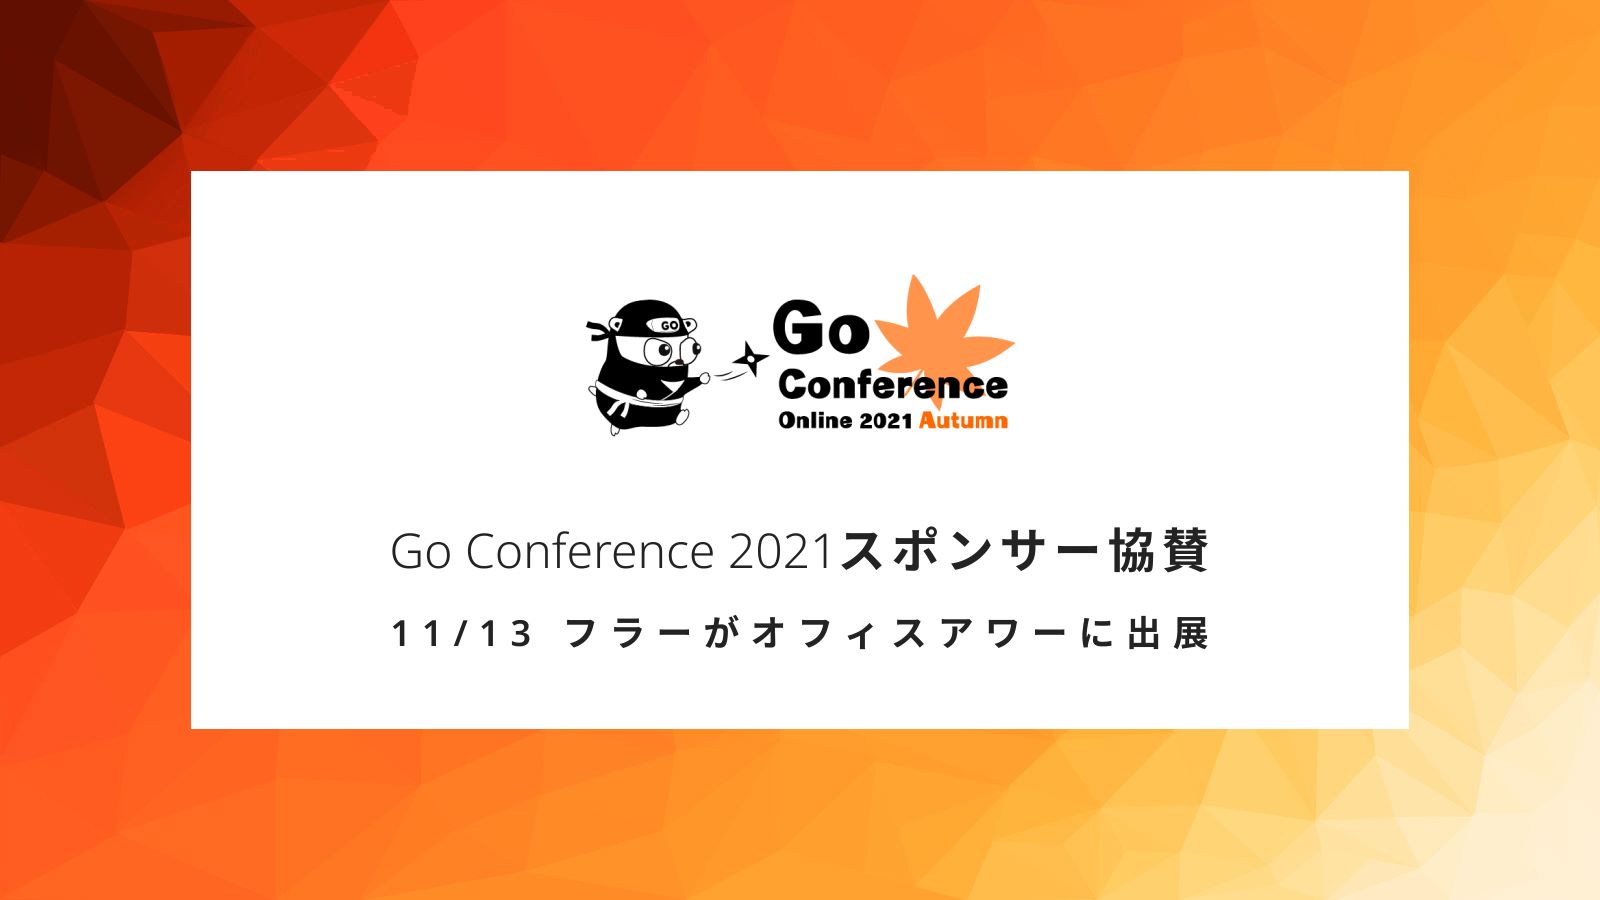 フラー、Go Conference Online 2021 Autumn にスポンサー協賛